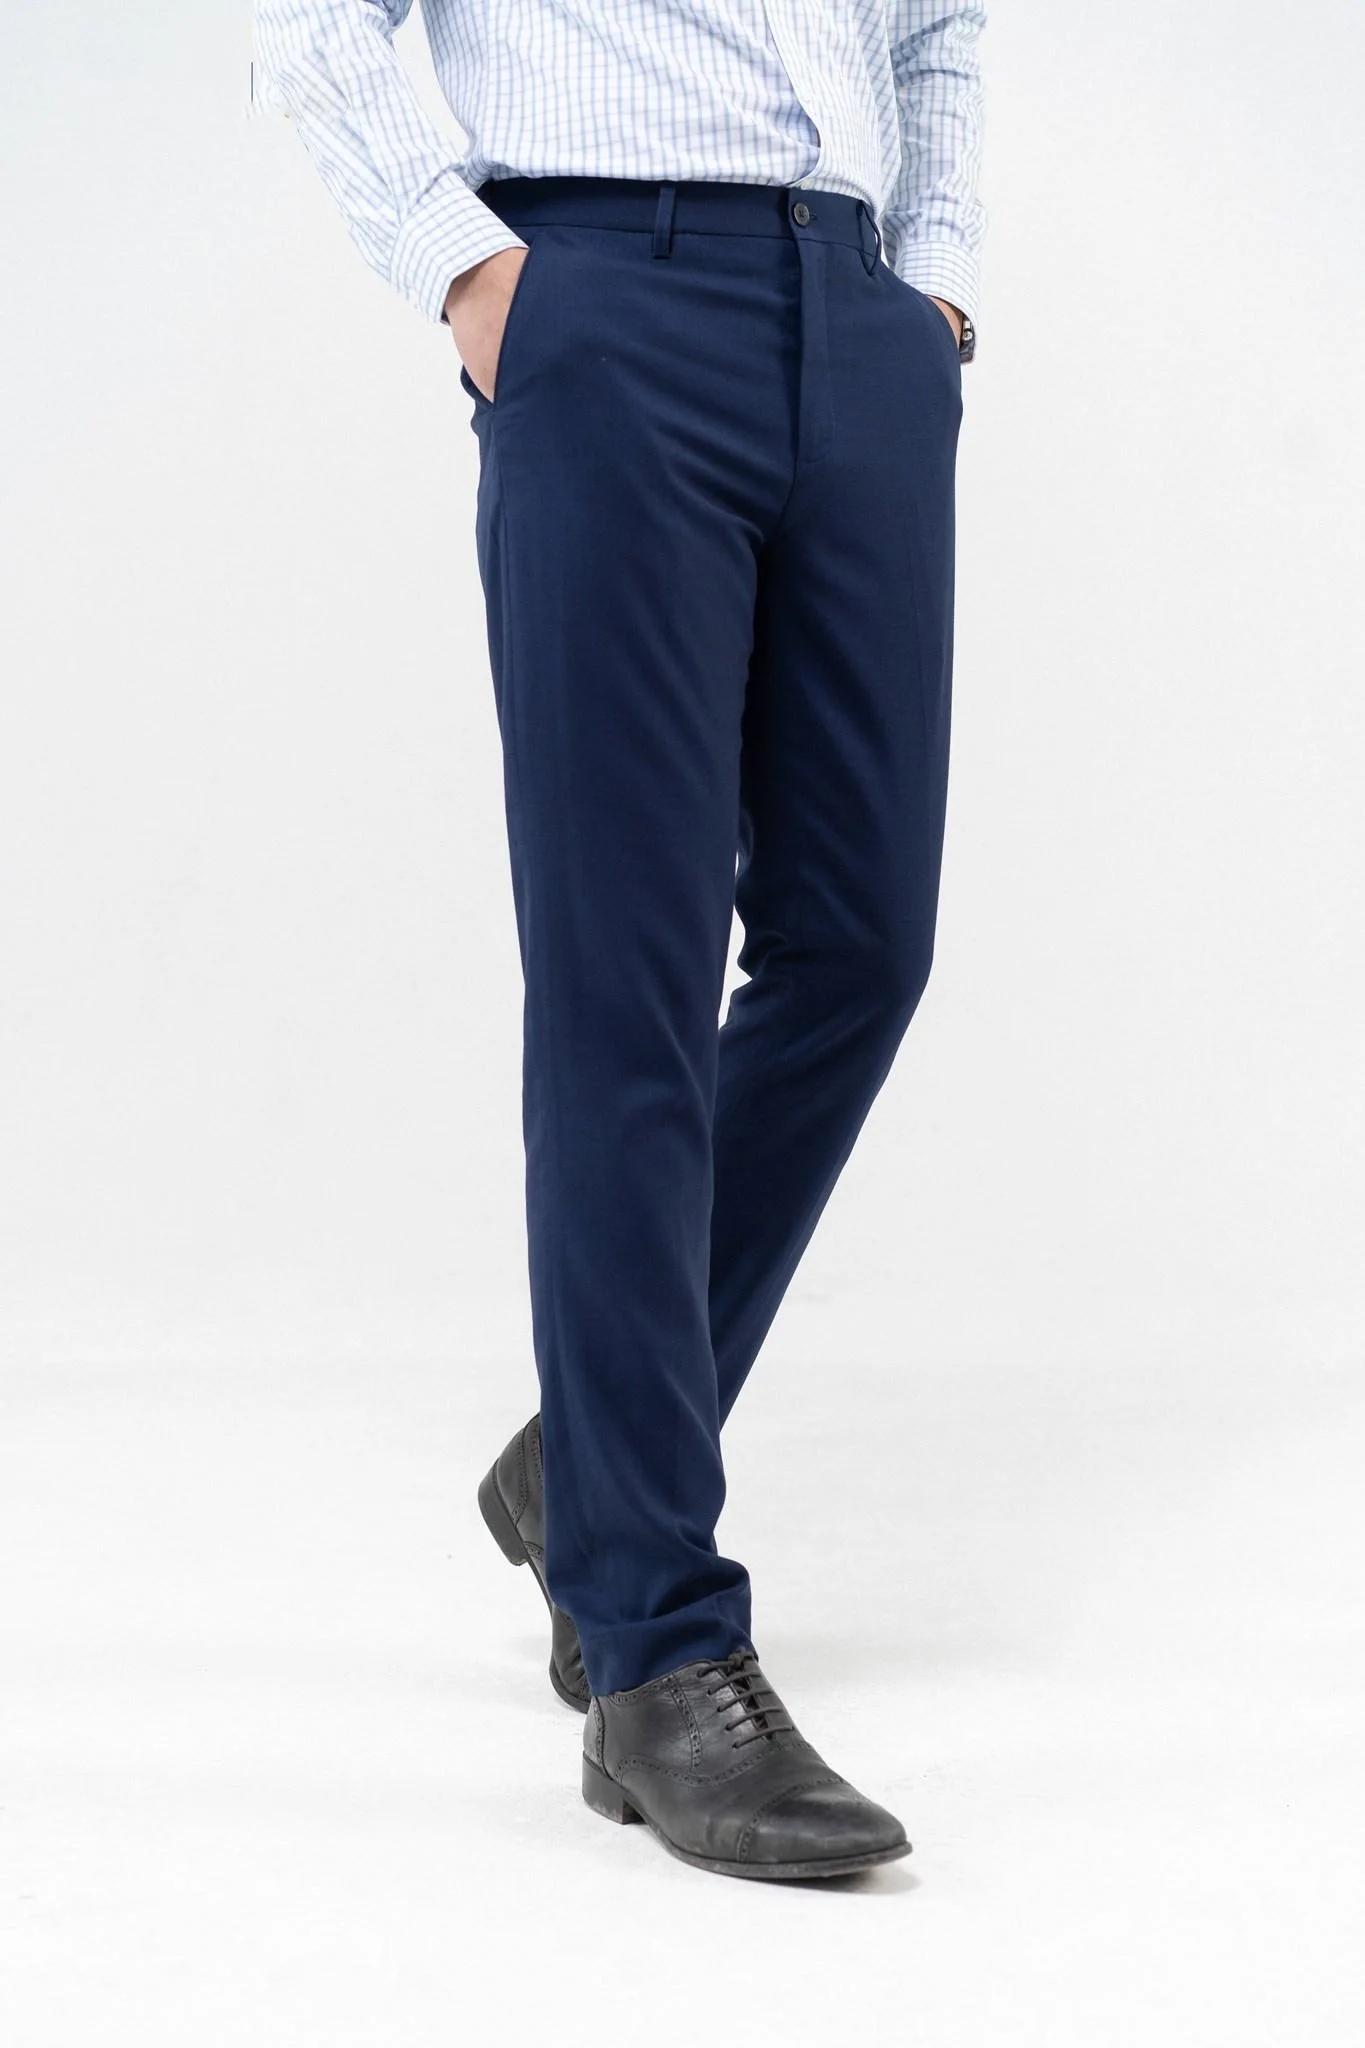 New Design Fashion Men Pants Business - Casual Men's Pants & Trousers ...